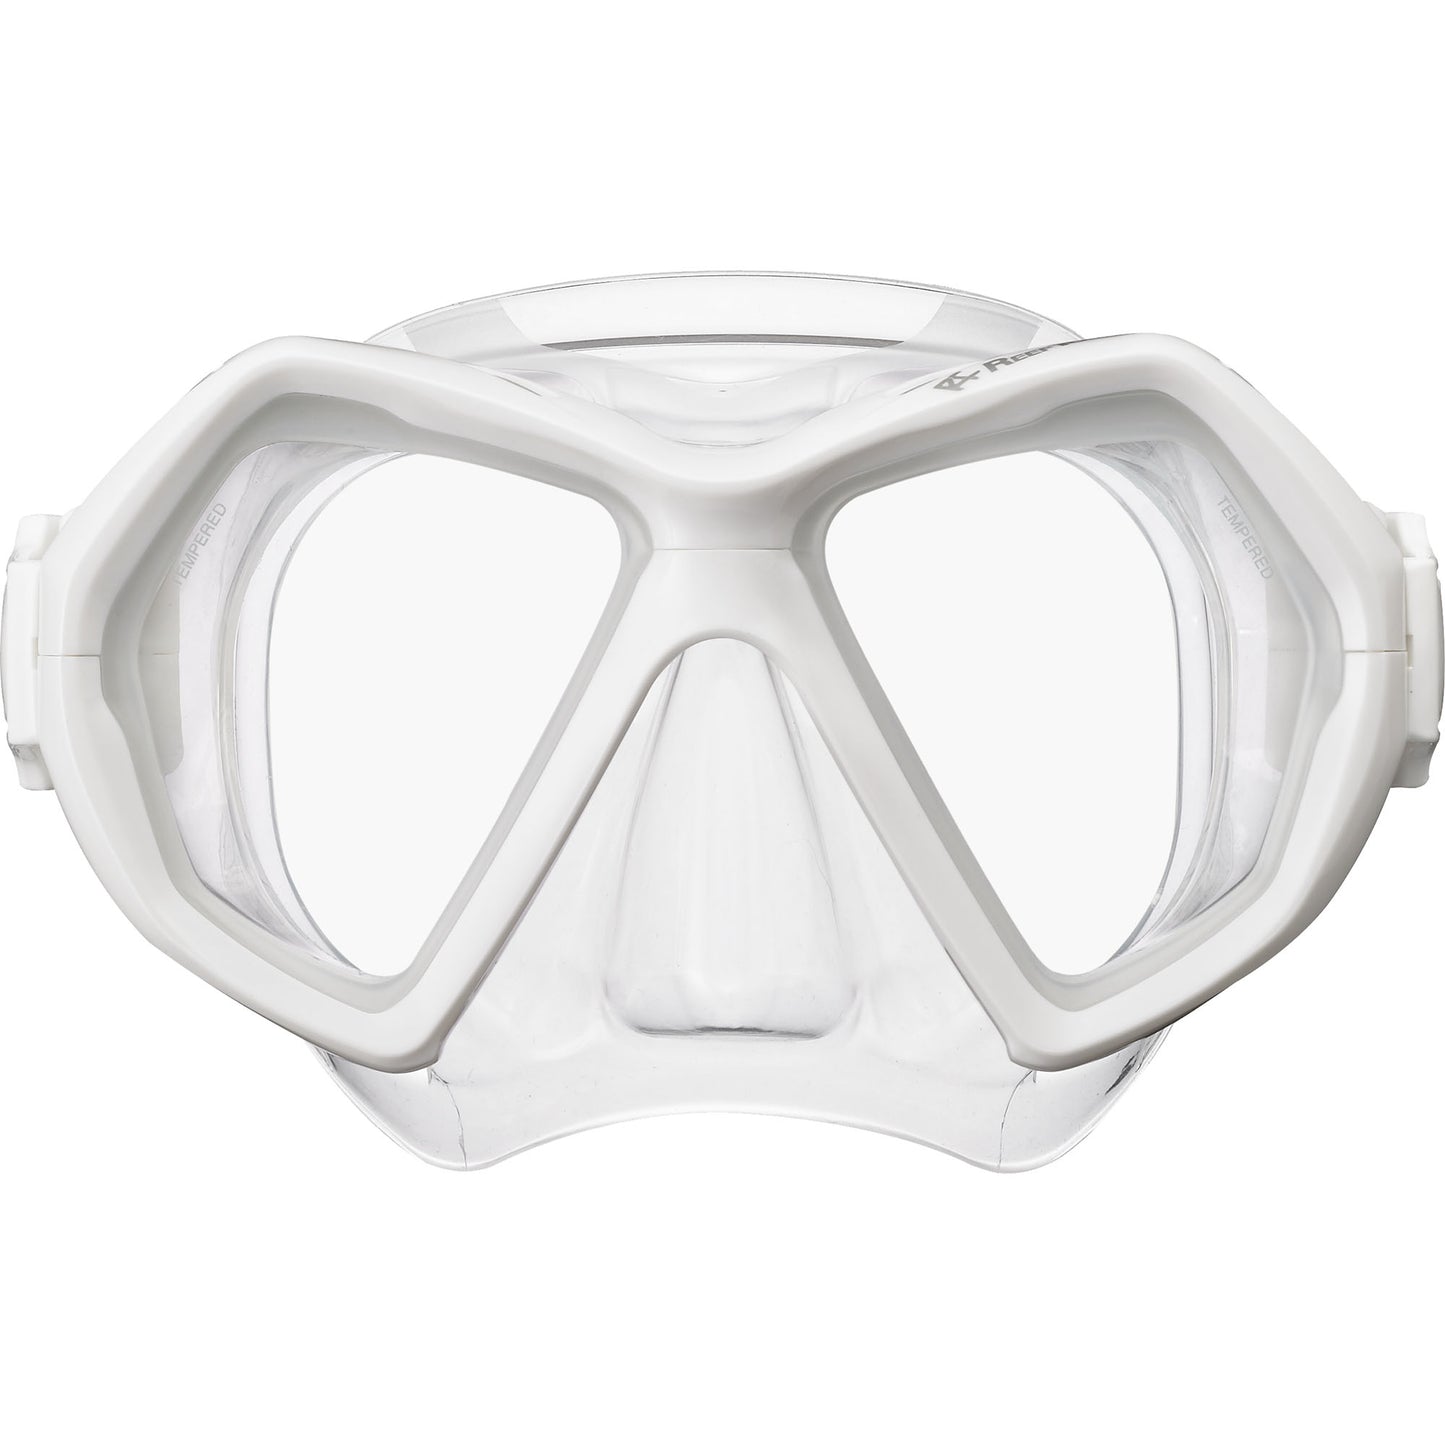 Adult X-Plore 2-Window Snorkeling Mask, White